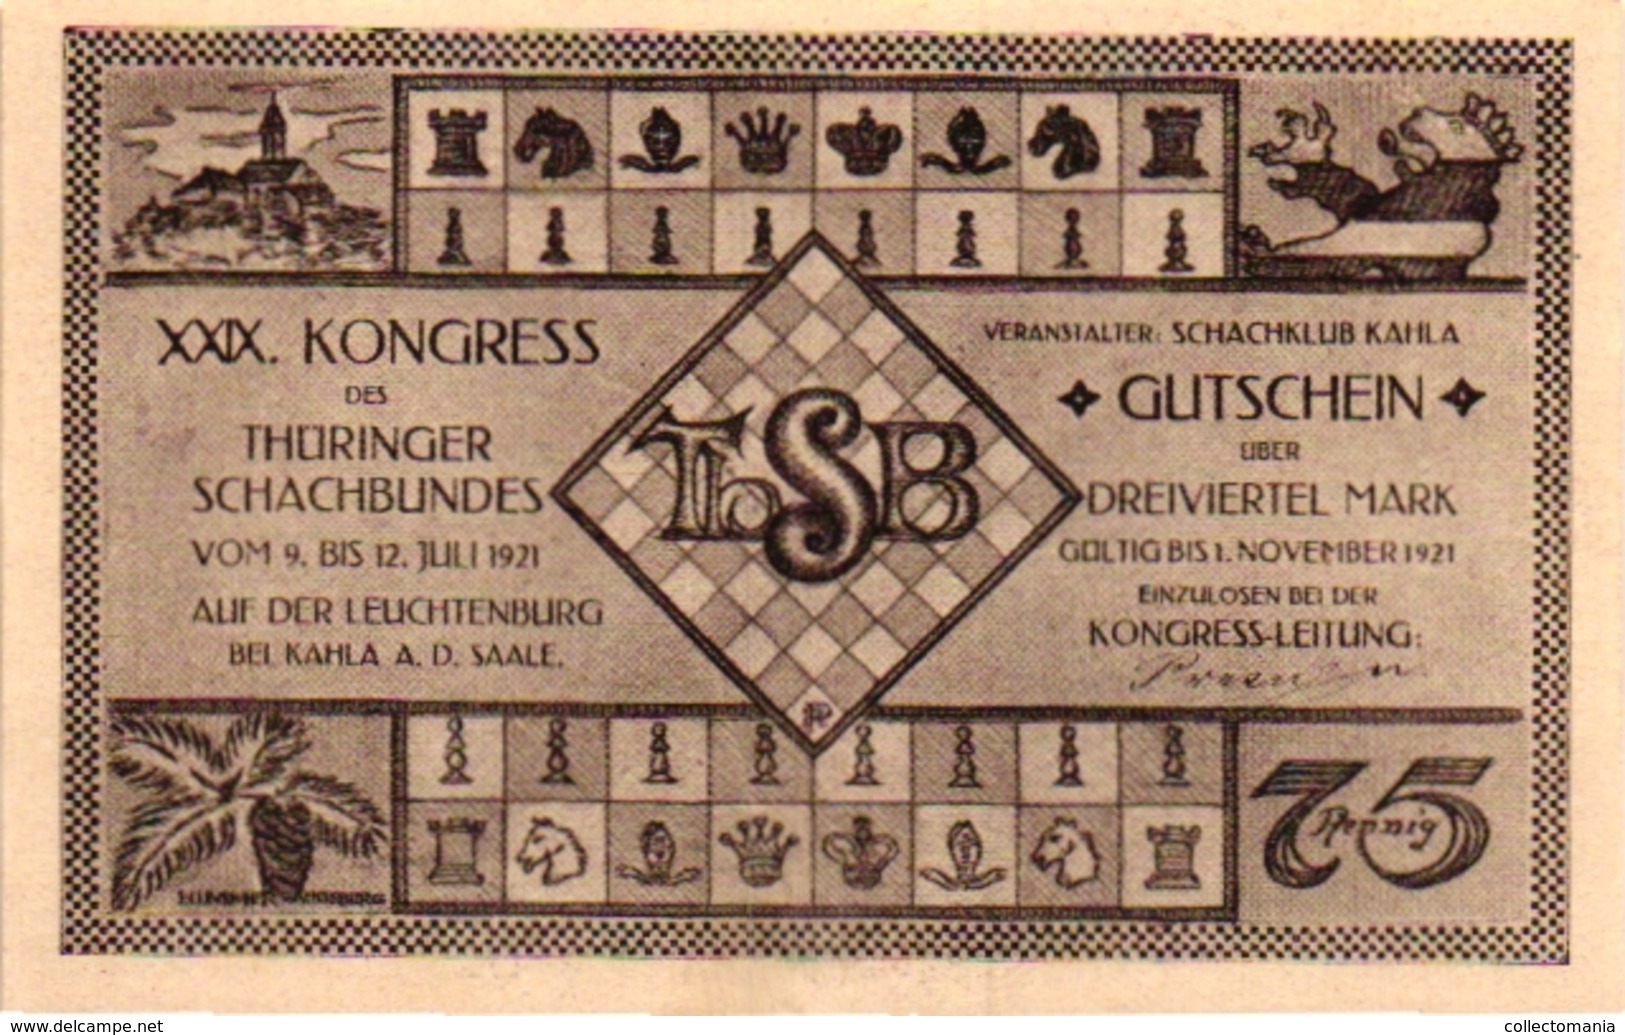 6 NOTGELD  CHESS ECHEC SCHACH  Die Welt-Schach -Partie Kongress Gutschein 1921 - Chess